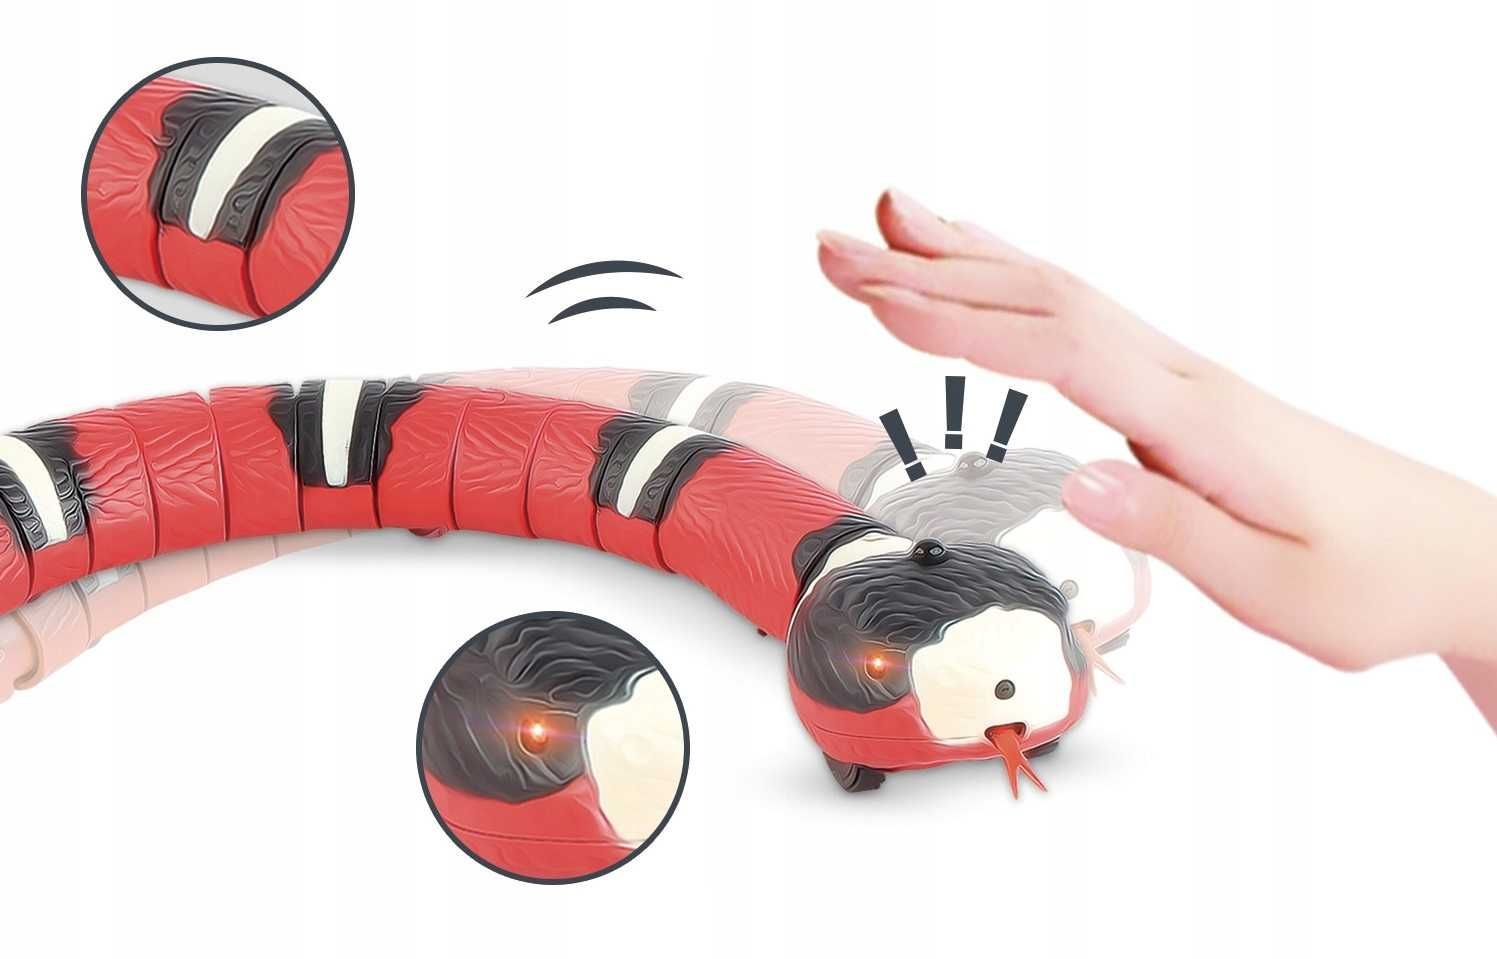 Zabawka interaktywna dla kota Elektryczny wąż 40 cm